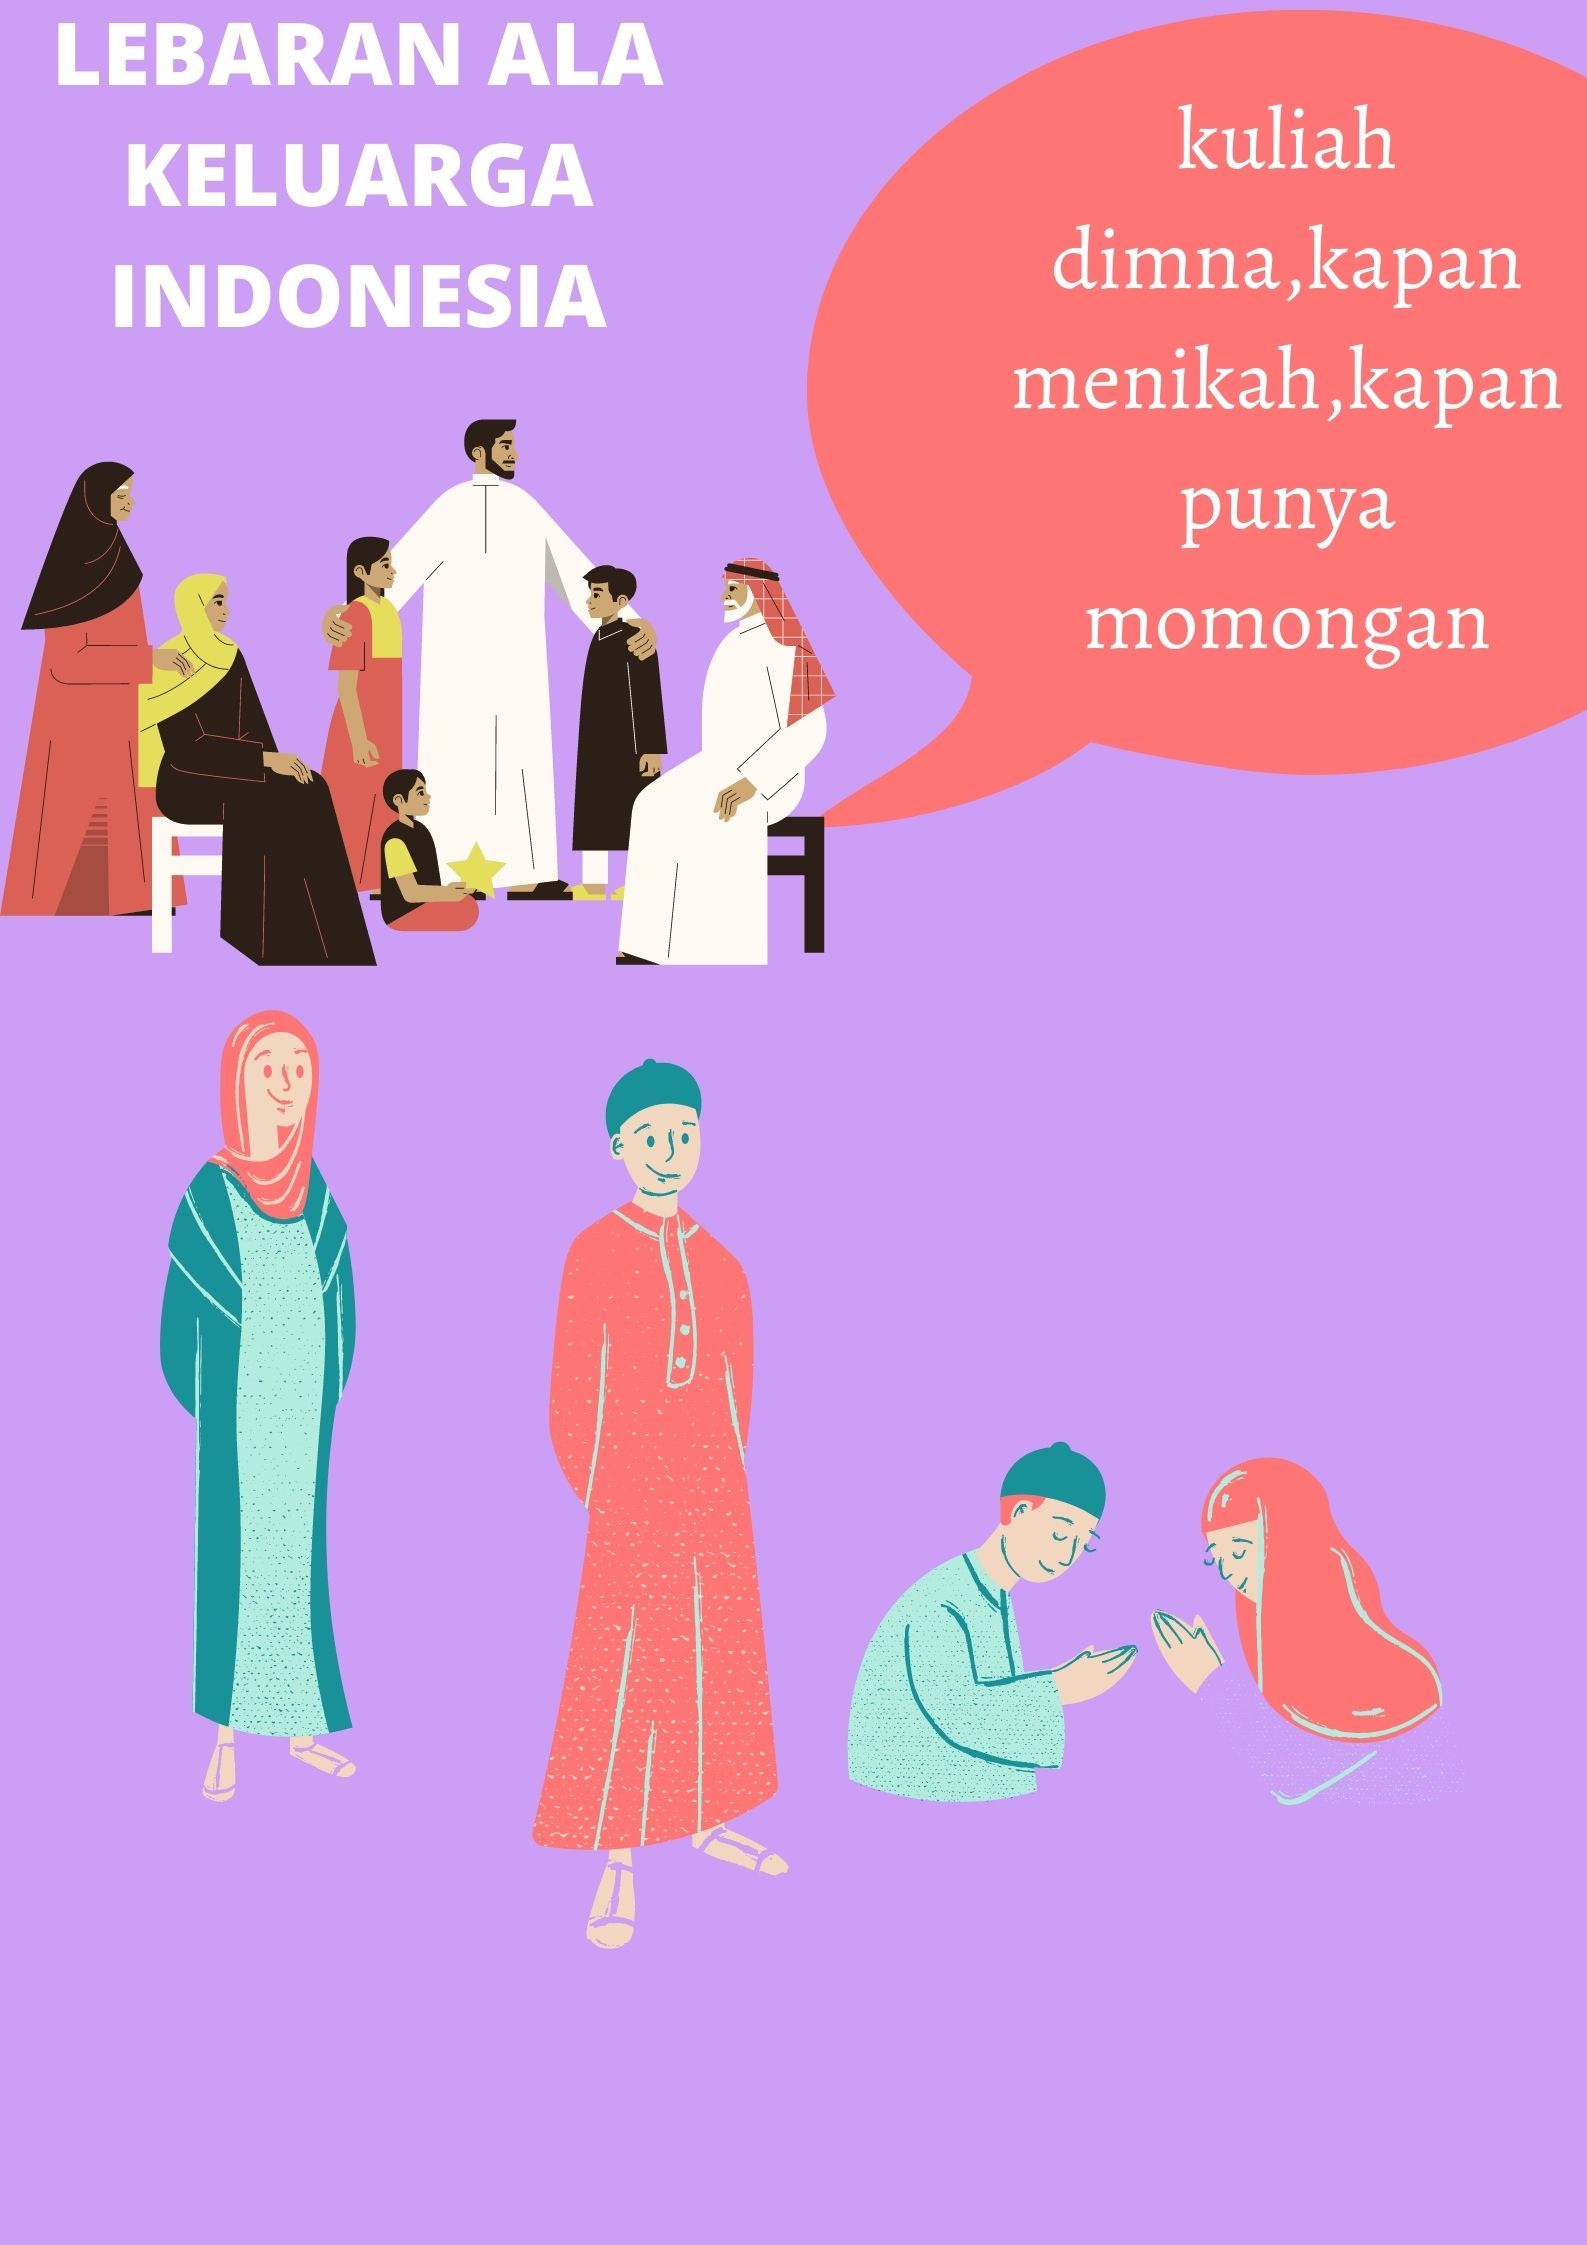 Basa-basi saat Hari Lebaran ala Keluarga Indonesia